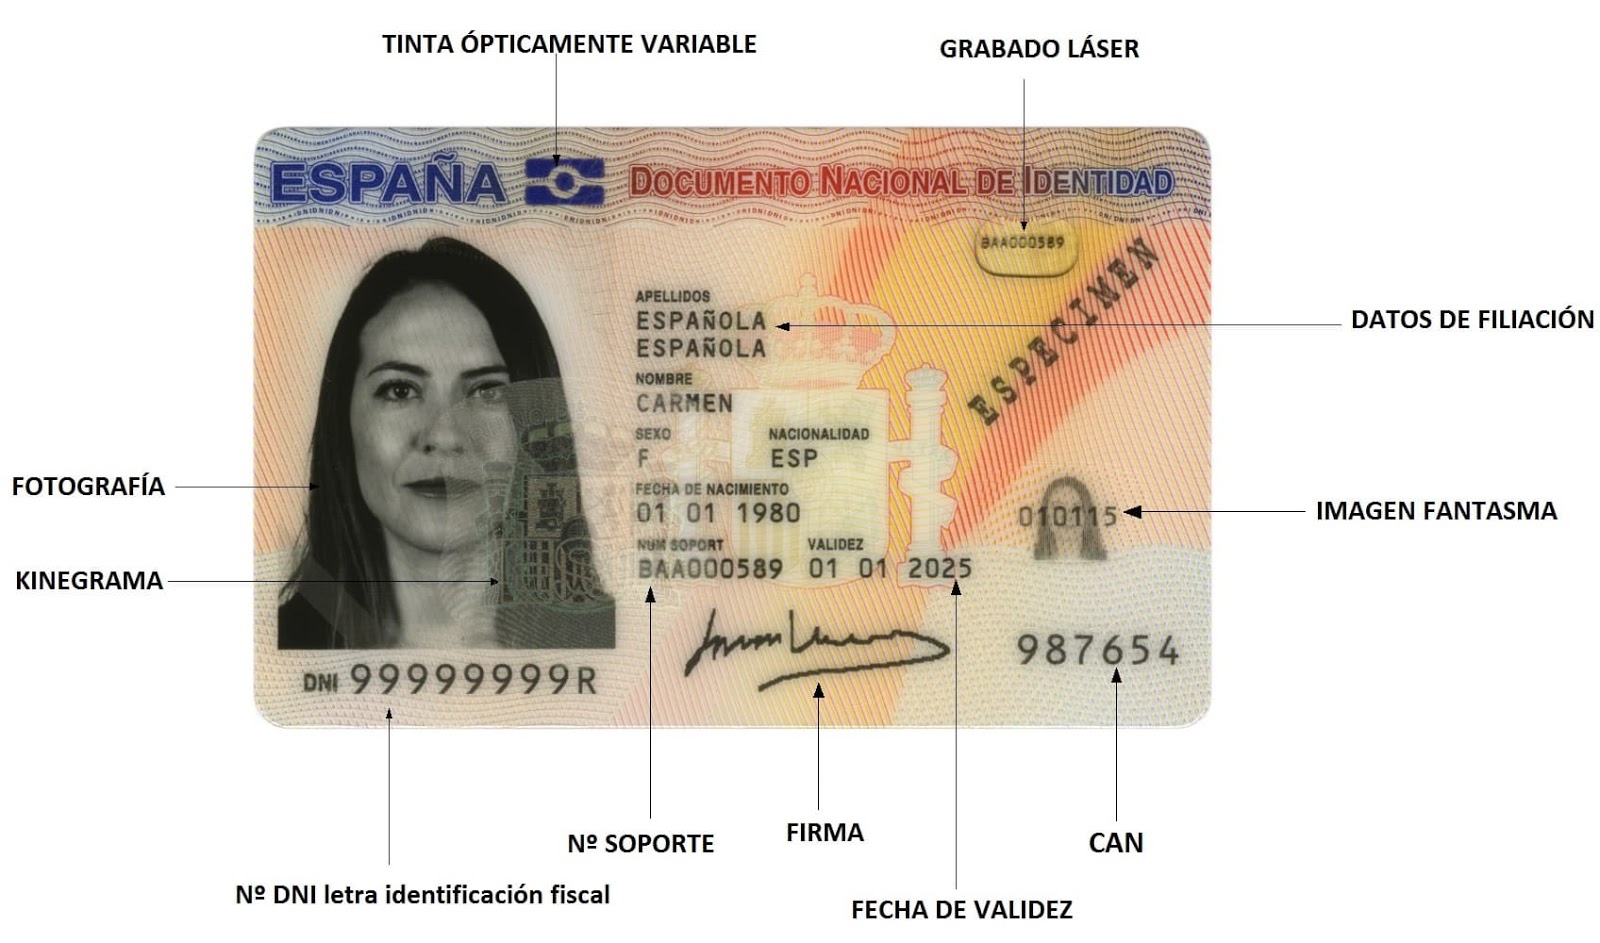 NIE (Numero de Identificacion de Extranjero) - это идентификационный номер ...